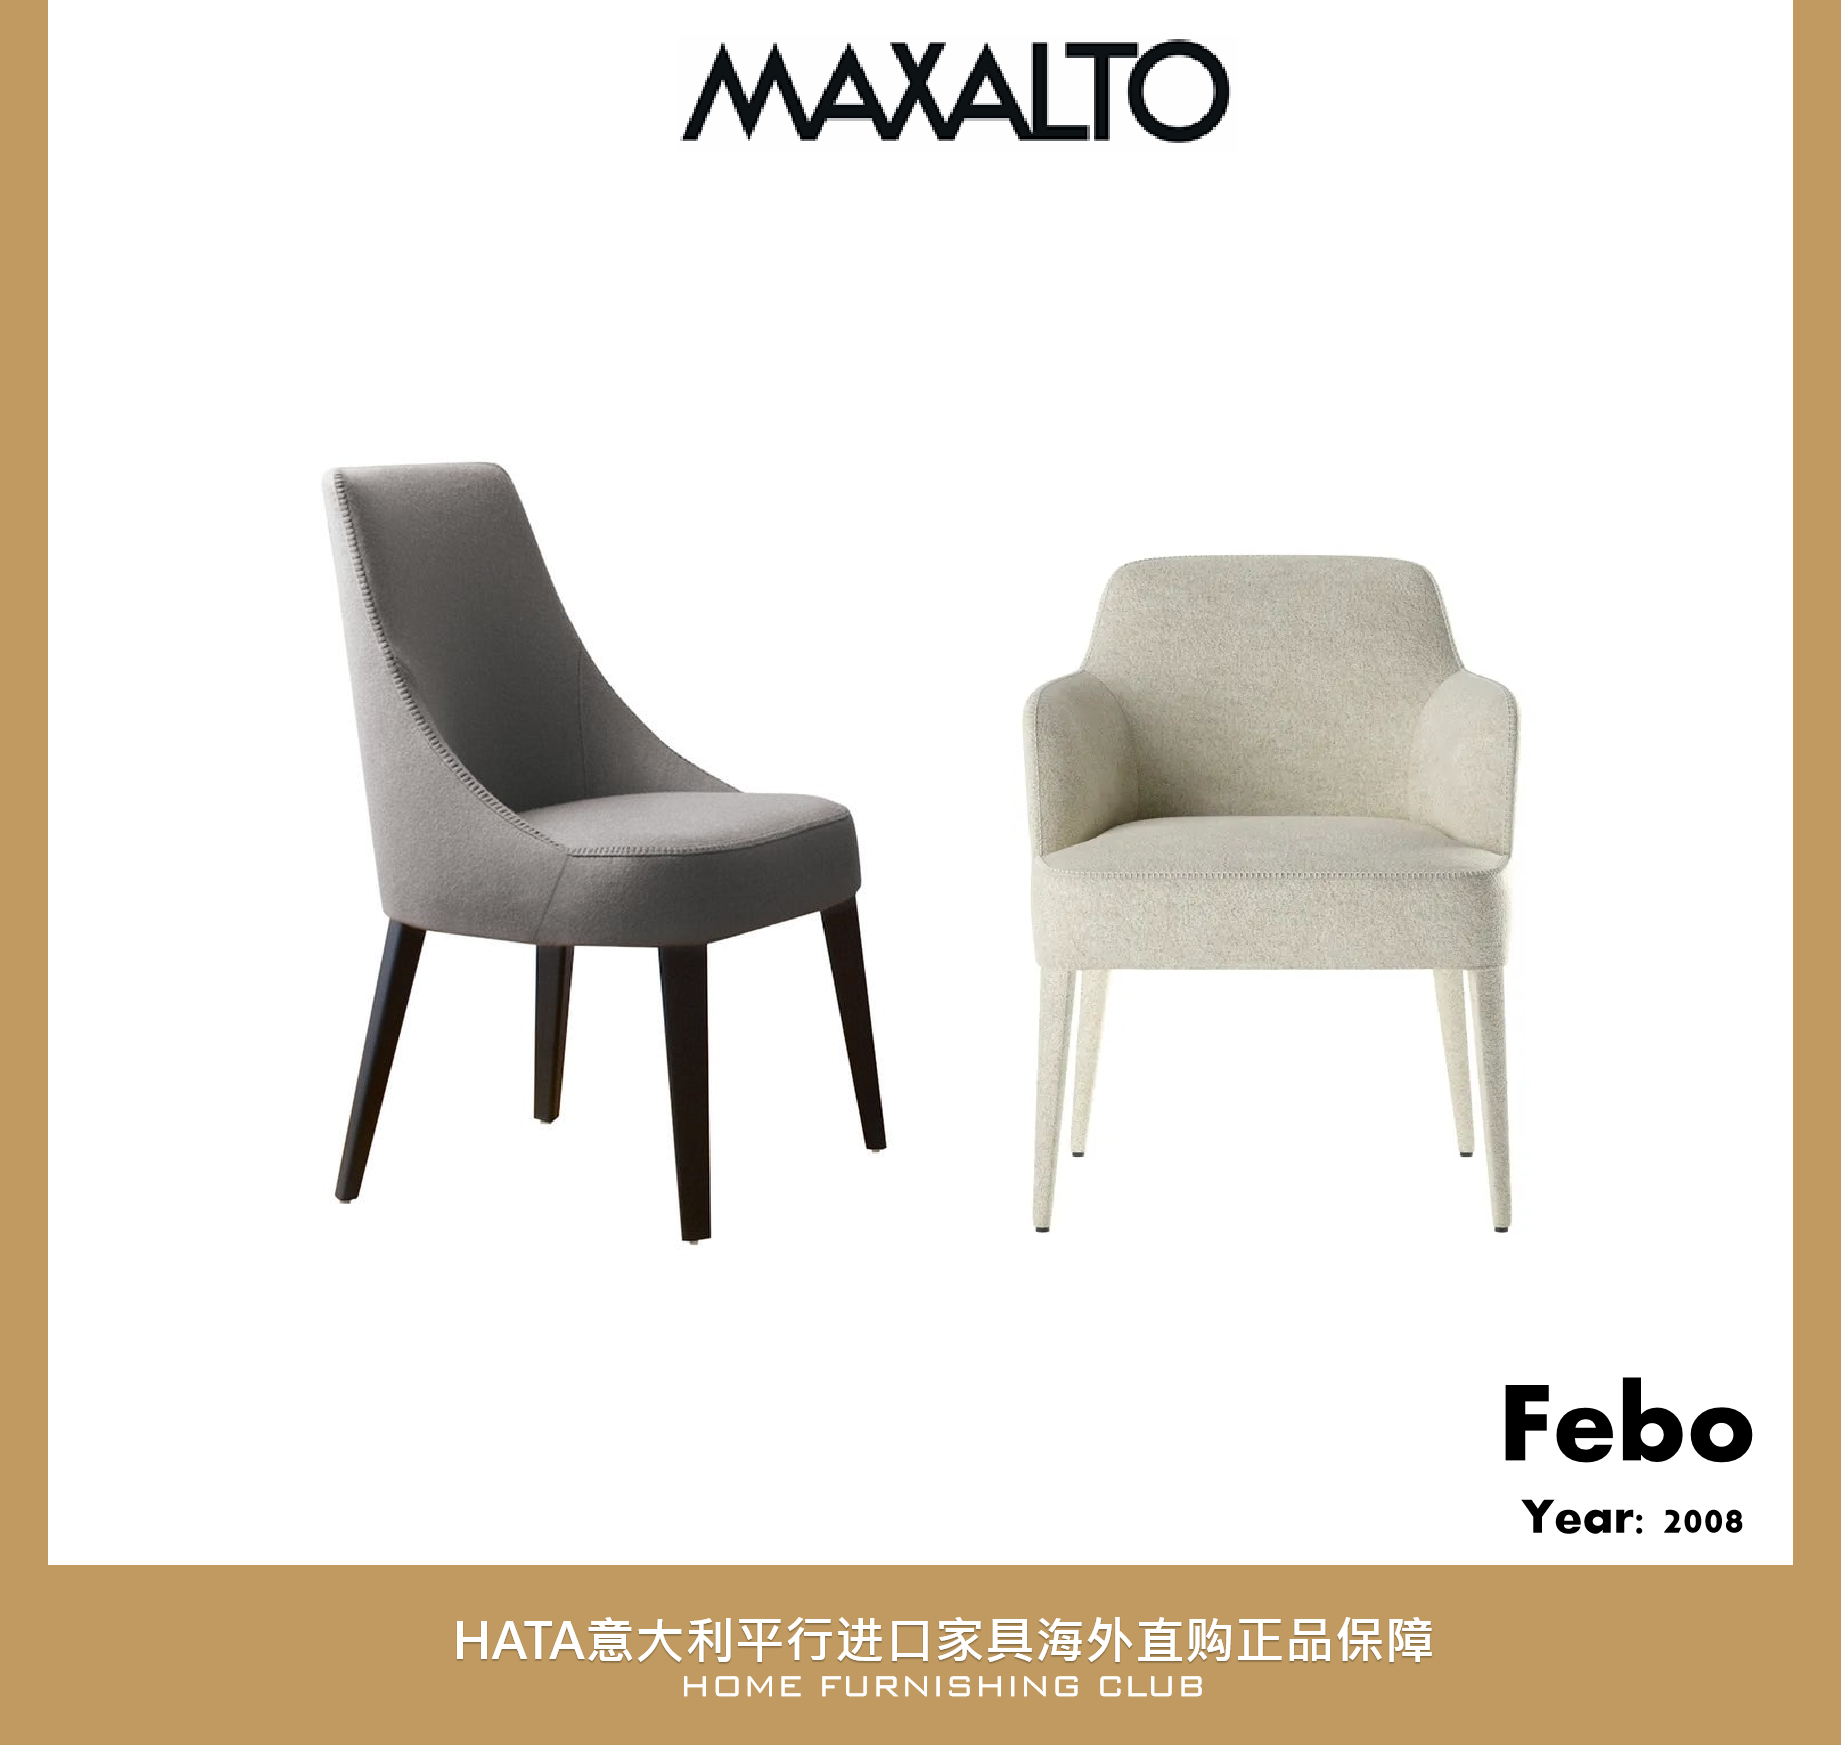 意大利进口家具 maxalto 餐椅原装平行进口正版海淘代购 B&B 椅子